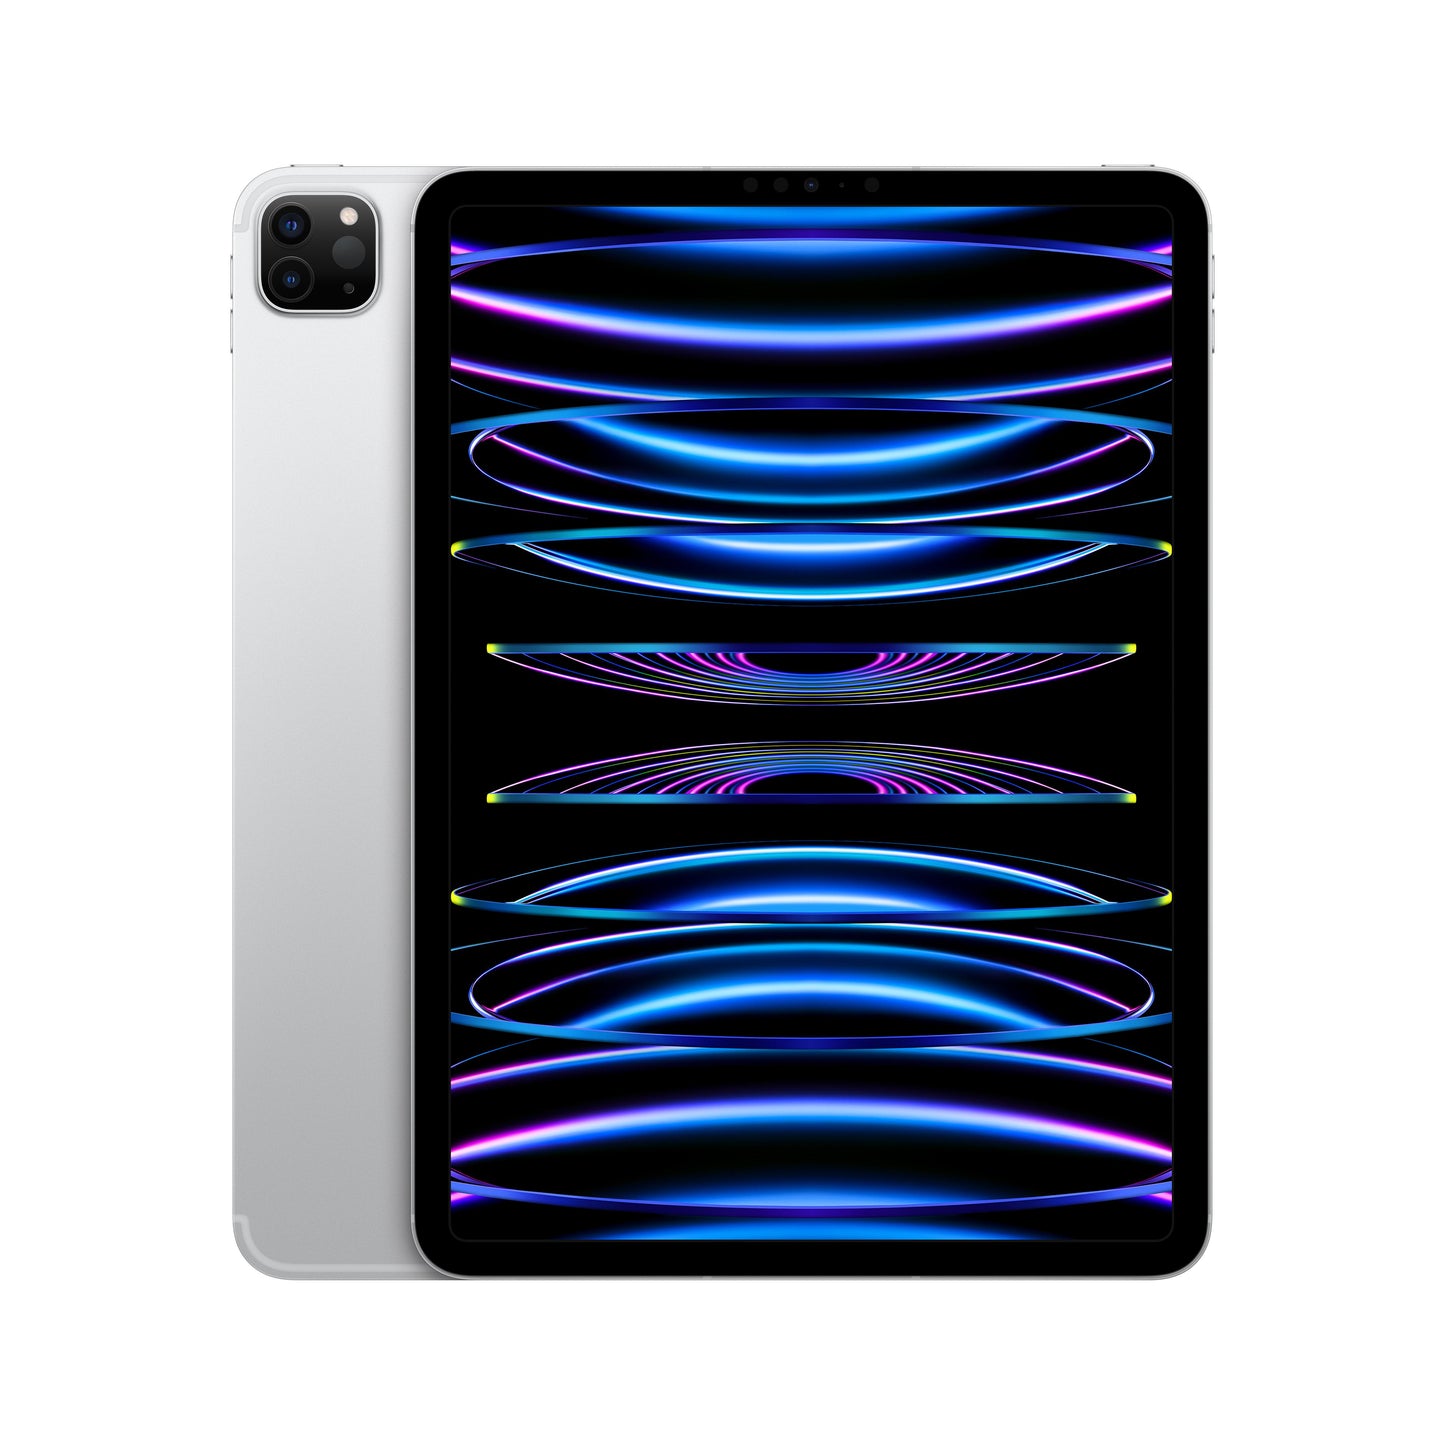 11-inch iPad Pro (4th Gen) Wi-Fi + Cellular 128GB - Silver